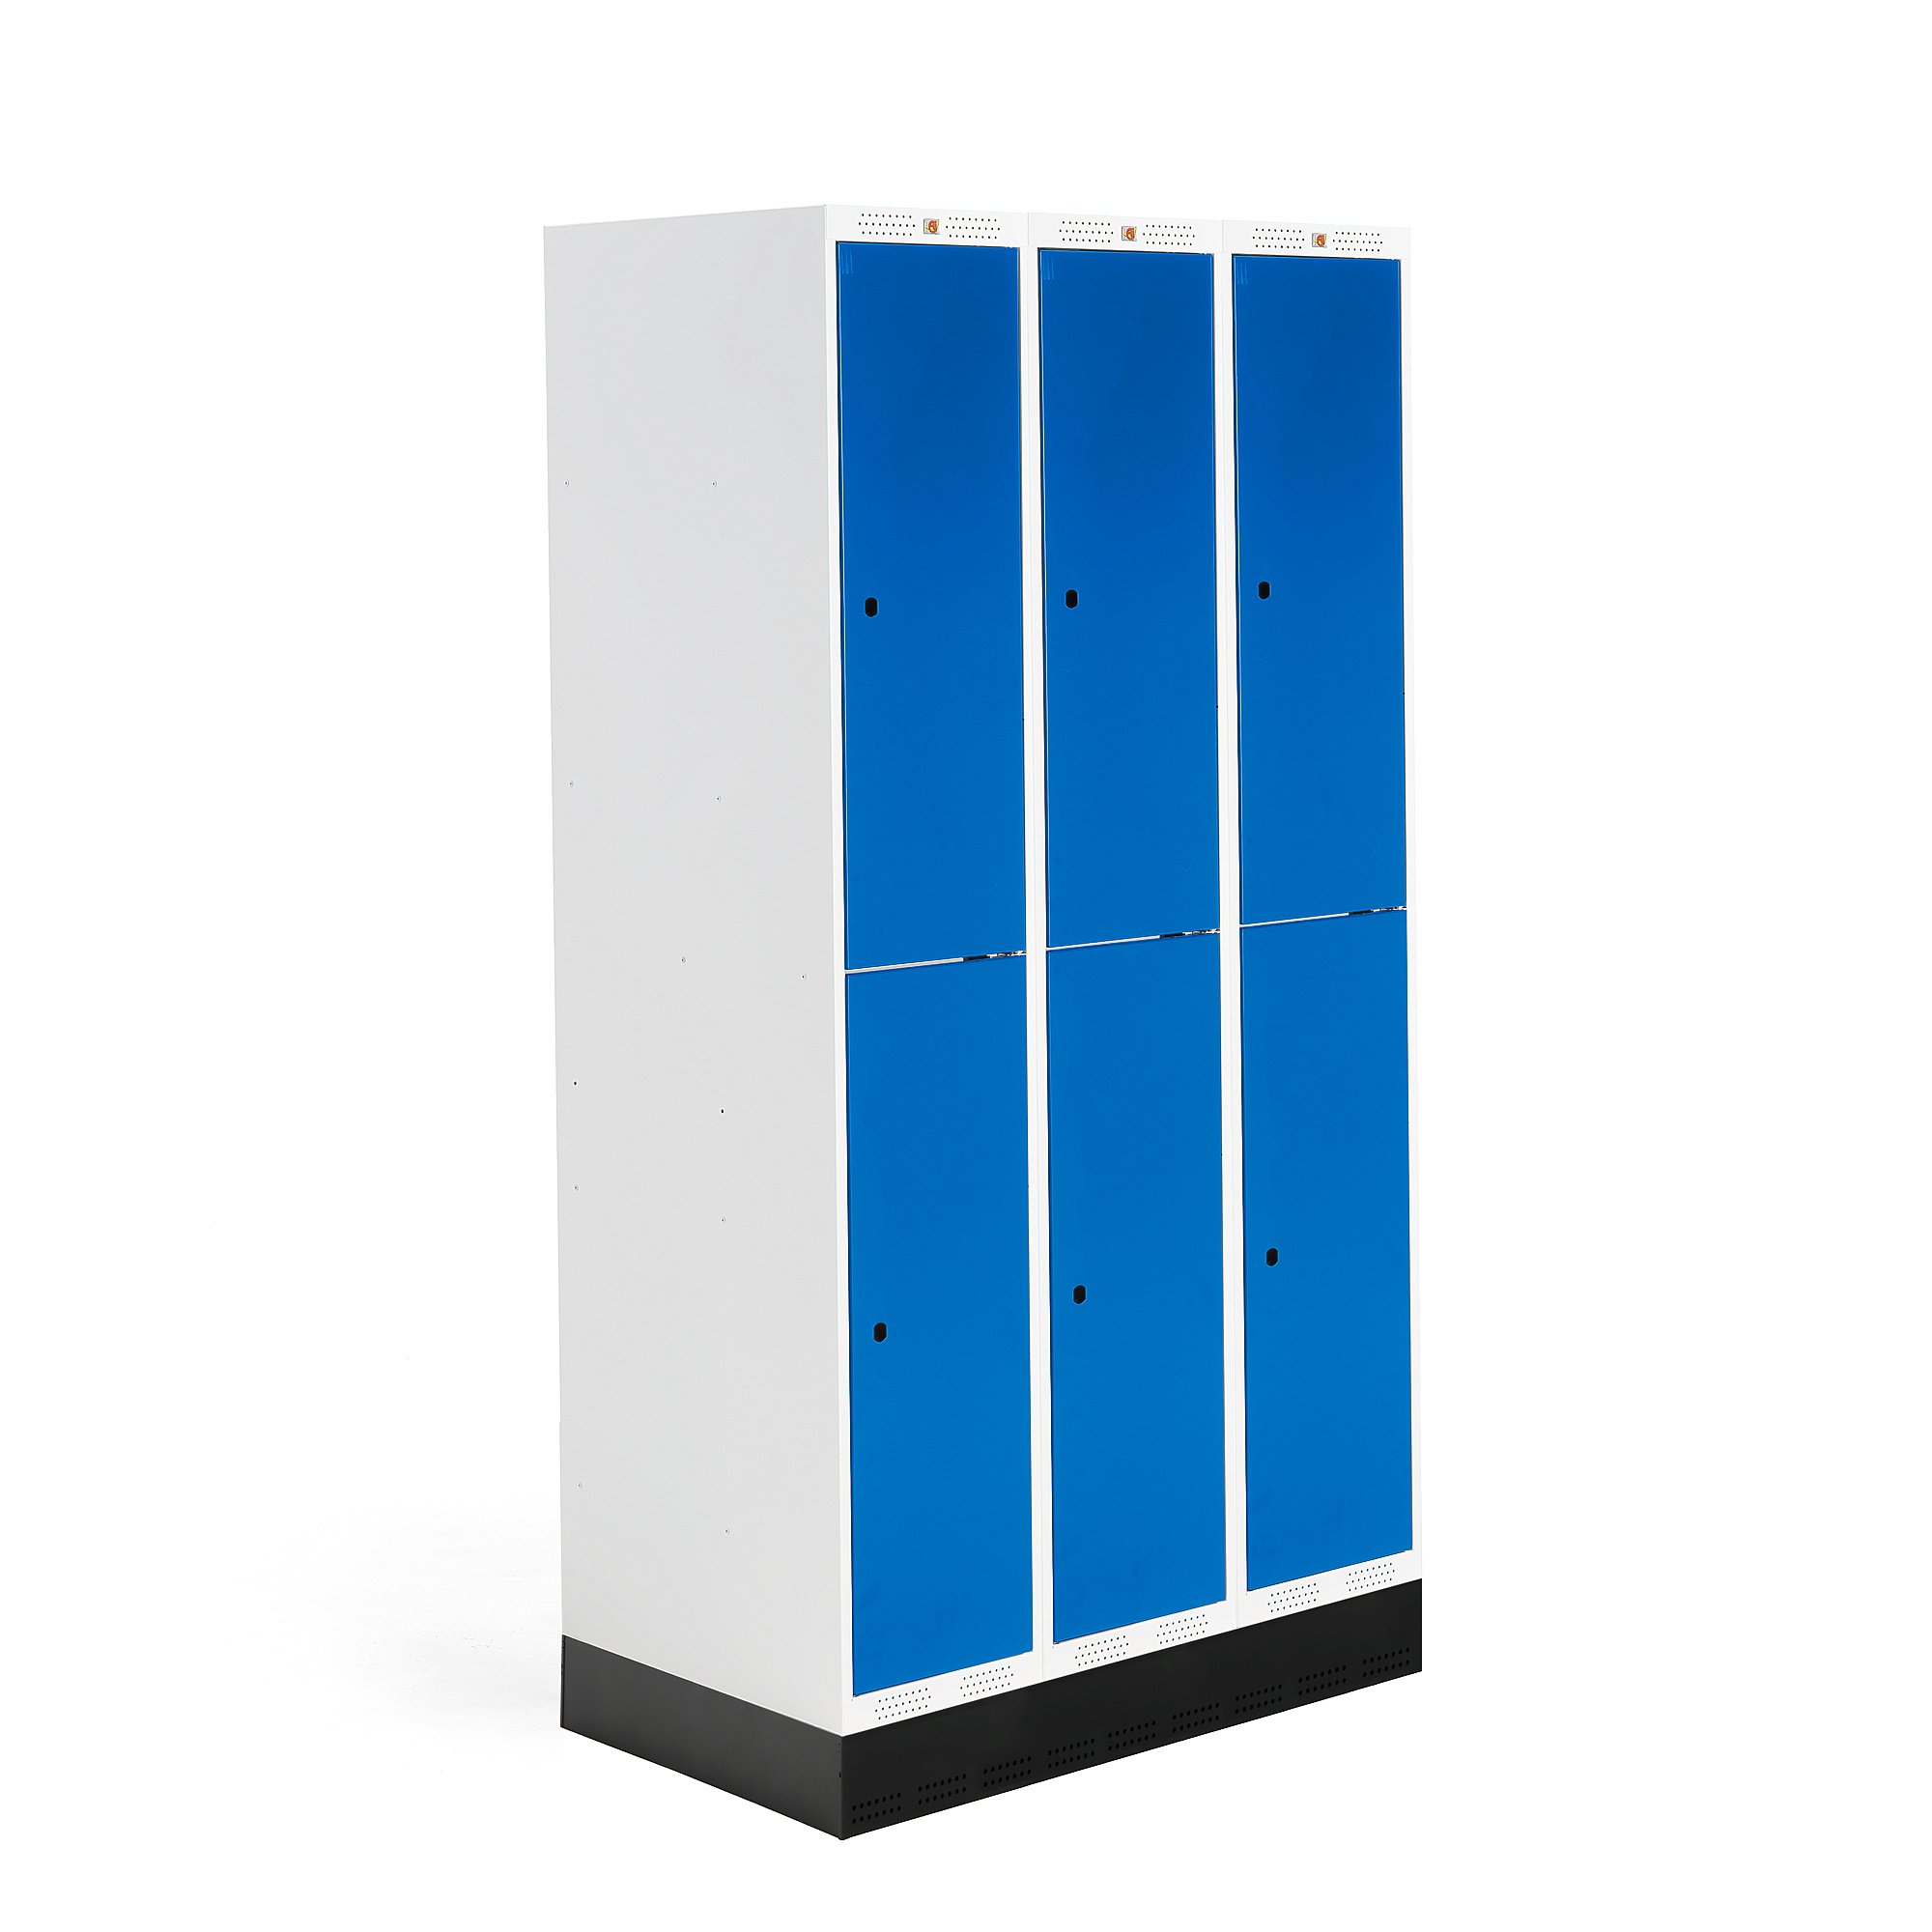 Šatní skříňka ROZ, 3 sekce, 6 boxů, se soklem, 1890x900x550 mm, modrá